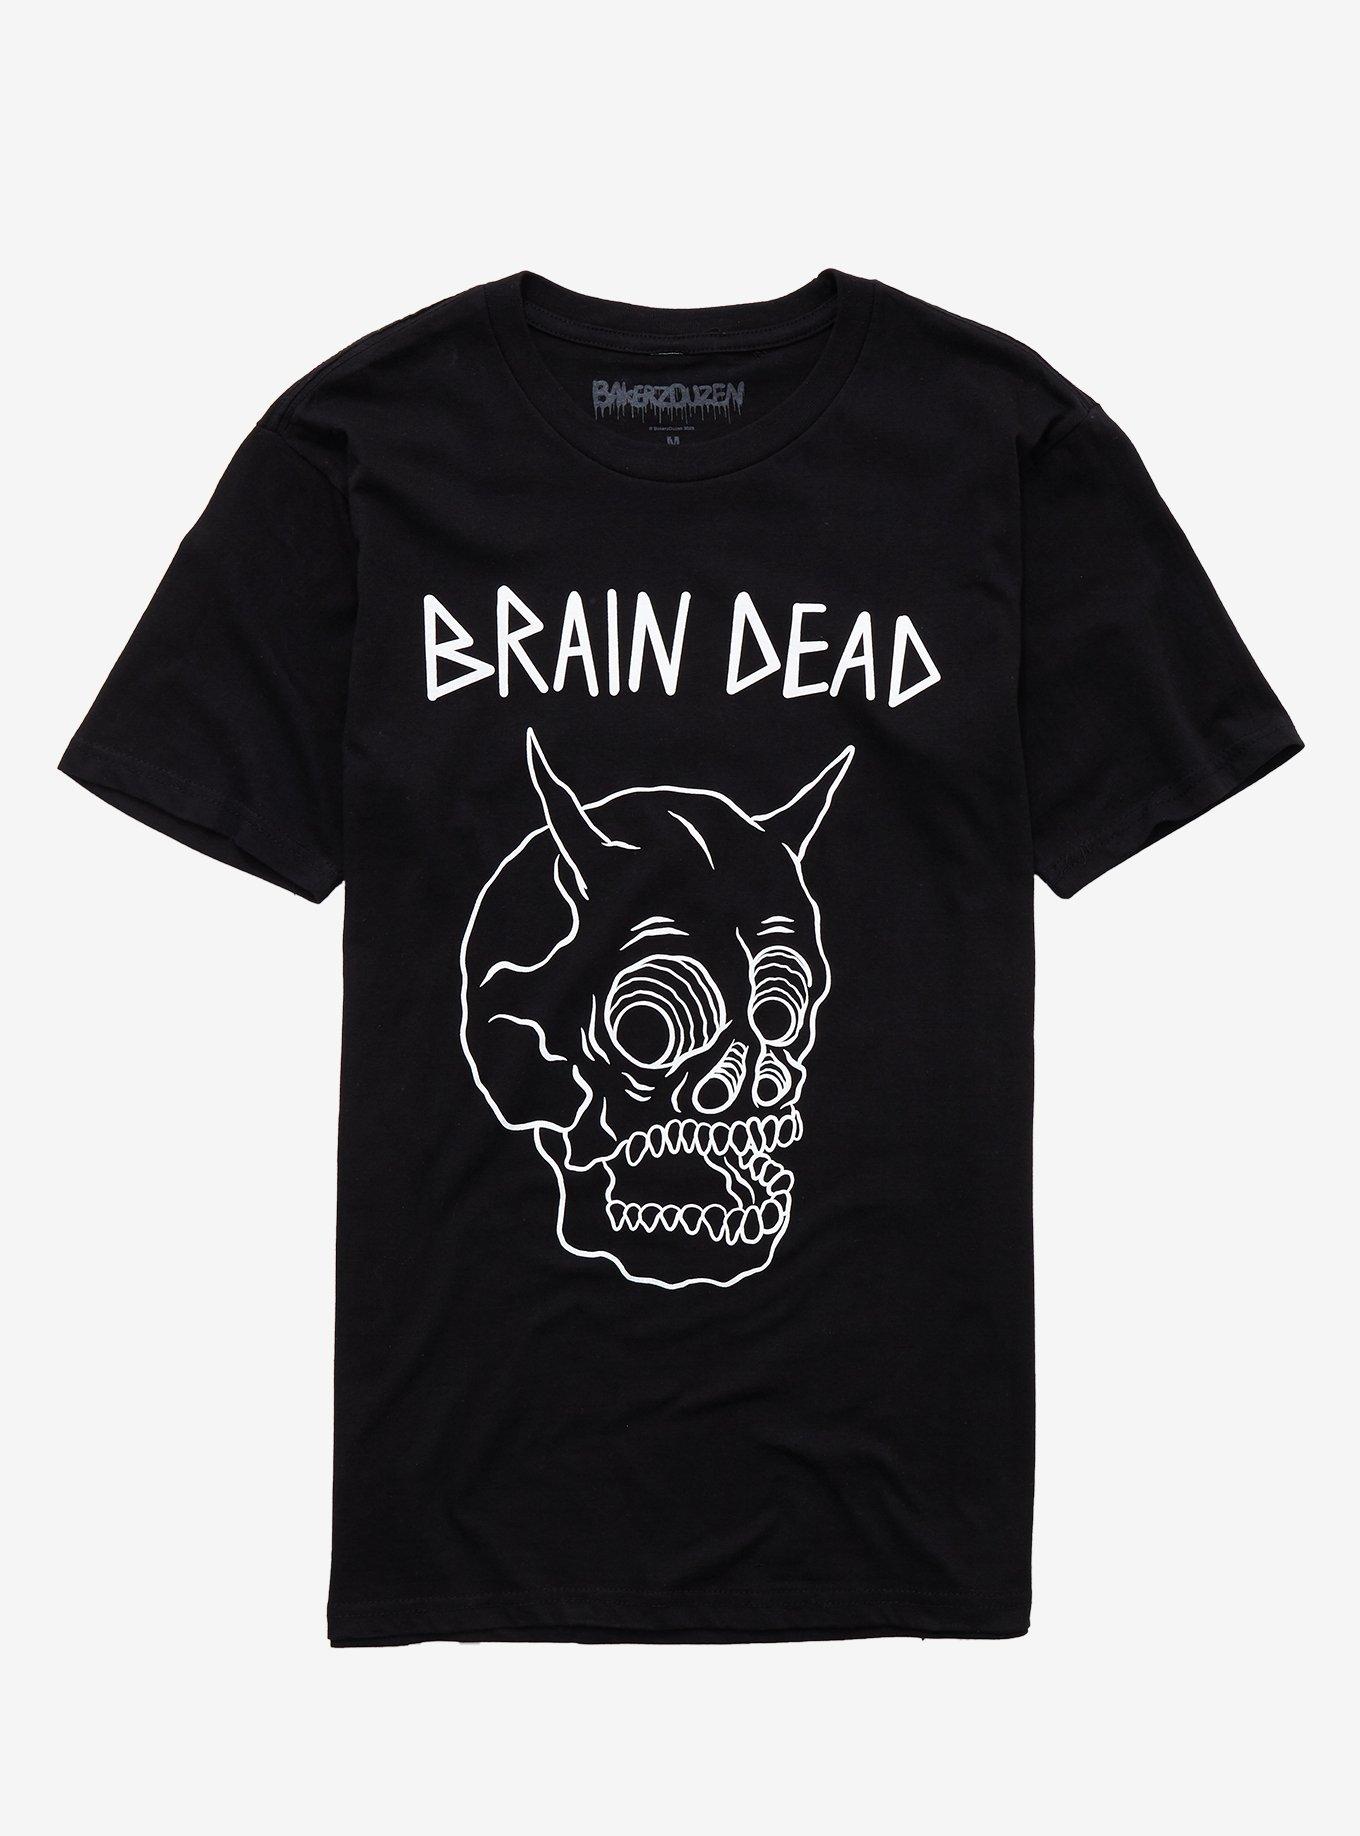 Brain Dead T-Shirt By Bakerduzen | Hot Topic